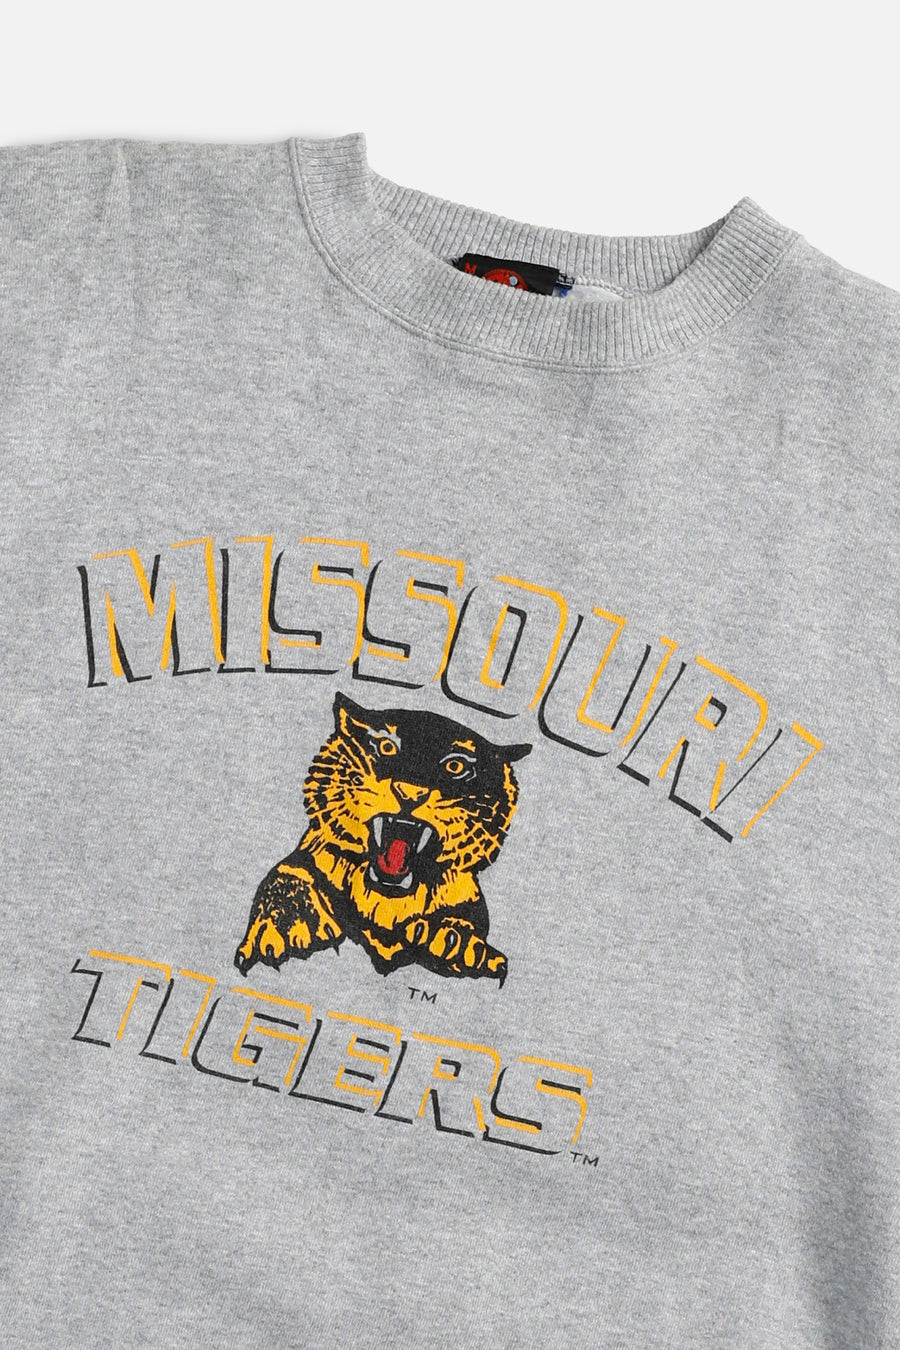 Vintage Missouri Tigers Sweatshirt - M